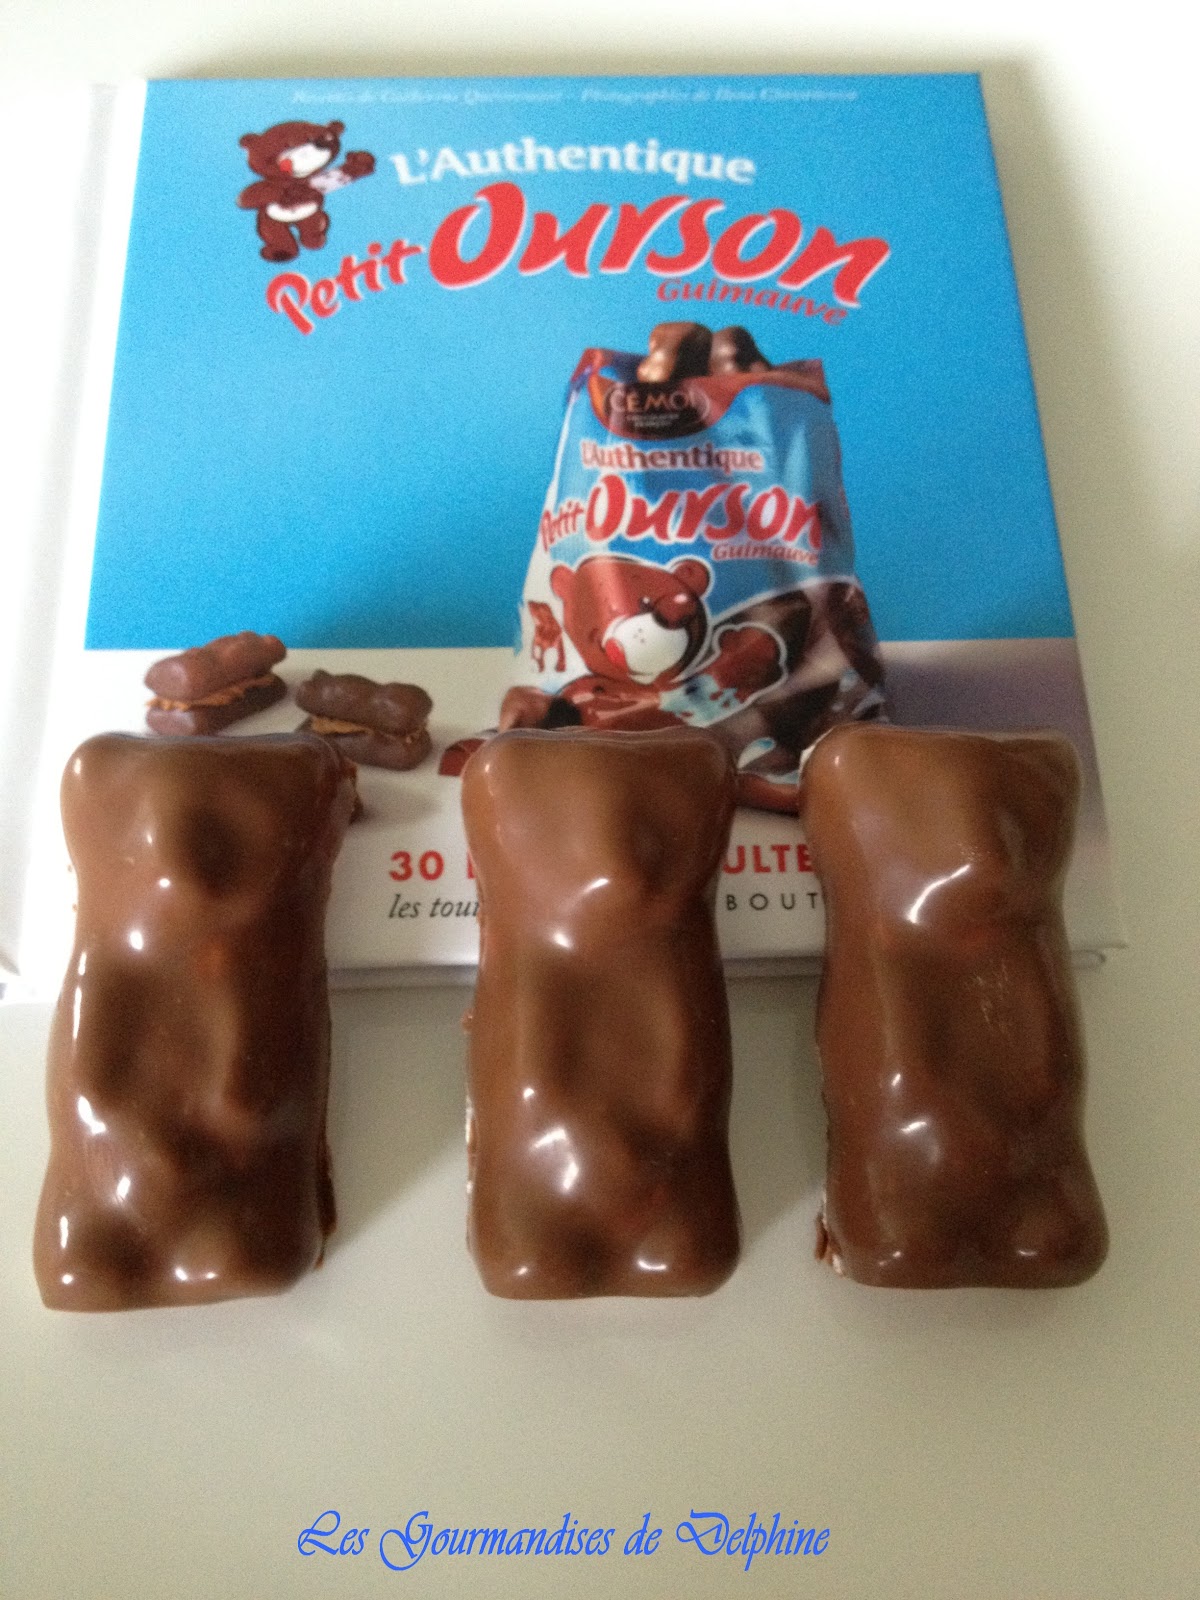 L'authentique petit ourson guimauve au chocolat, Cémoi (180 g